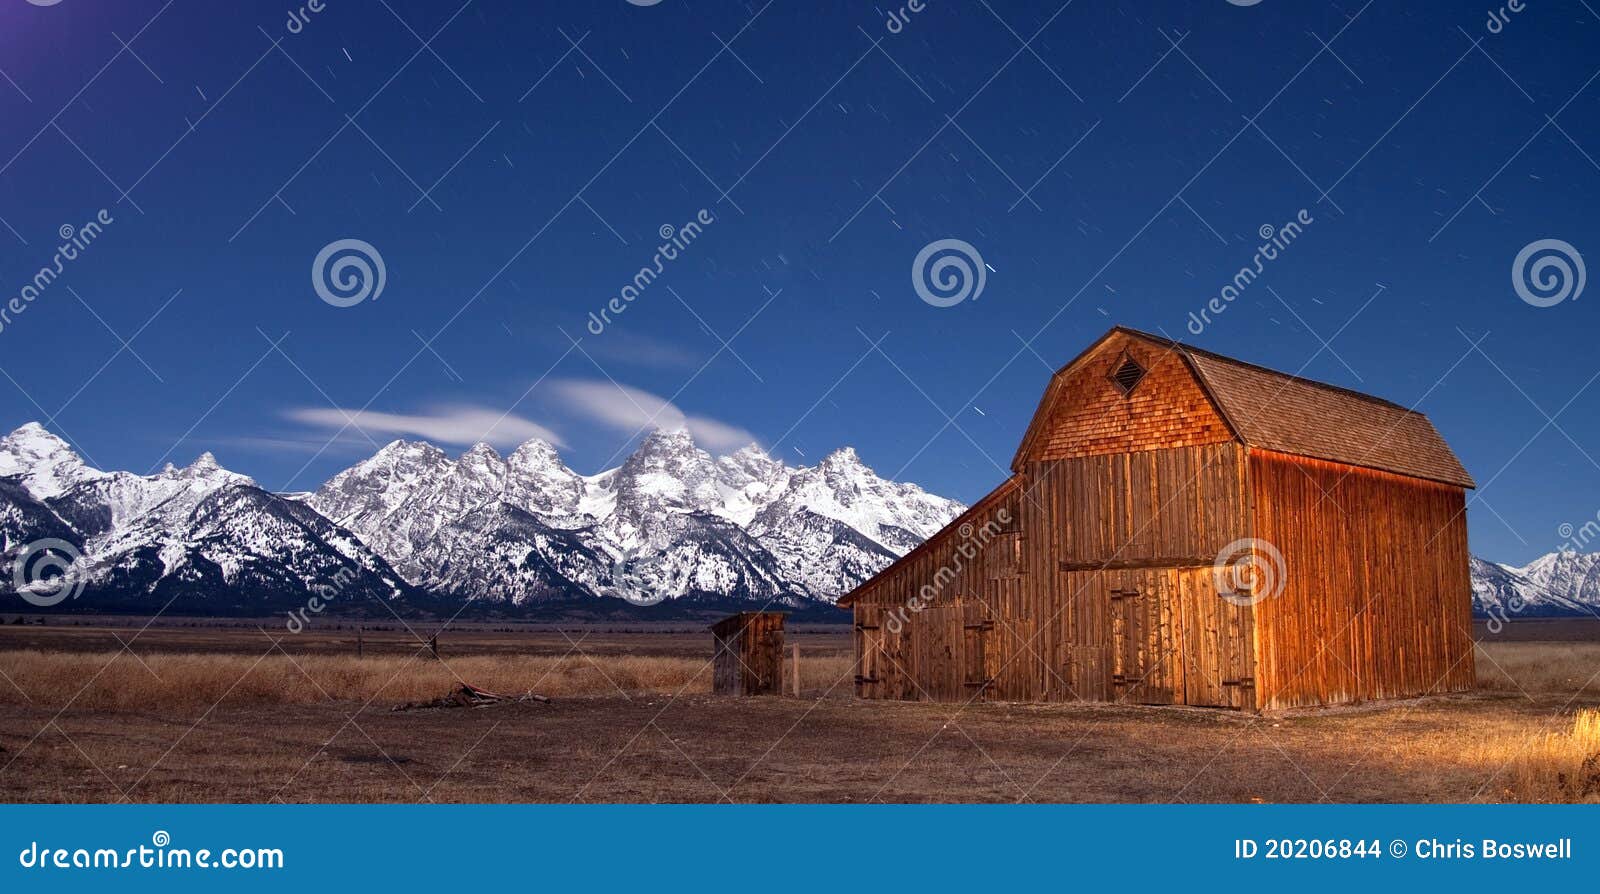 teton wyoming barn at sunset mountains